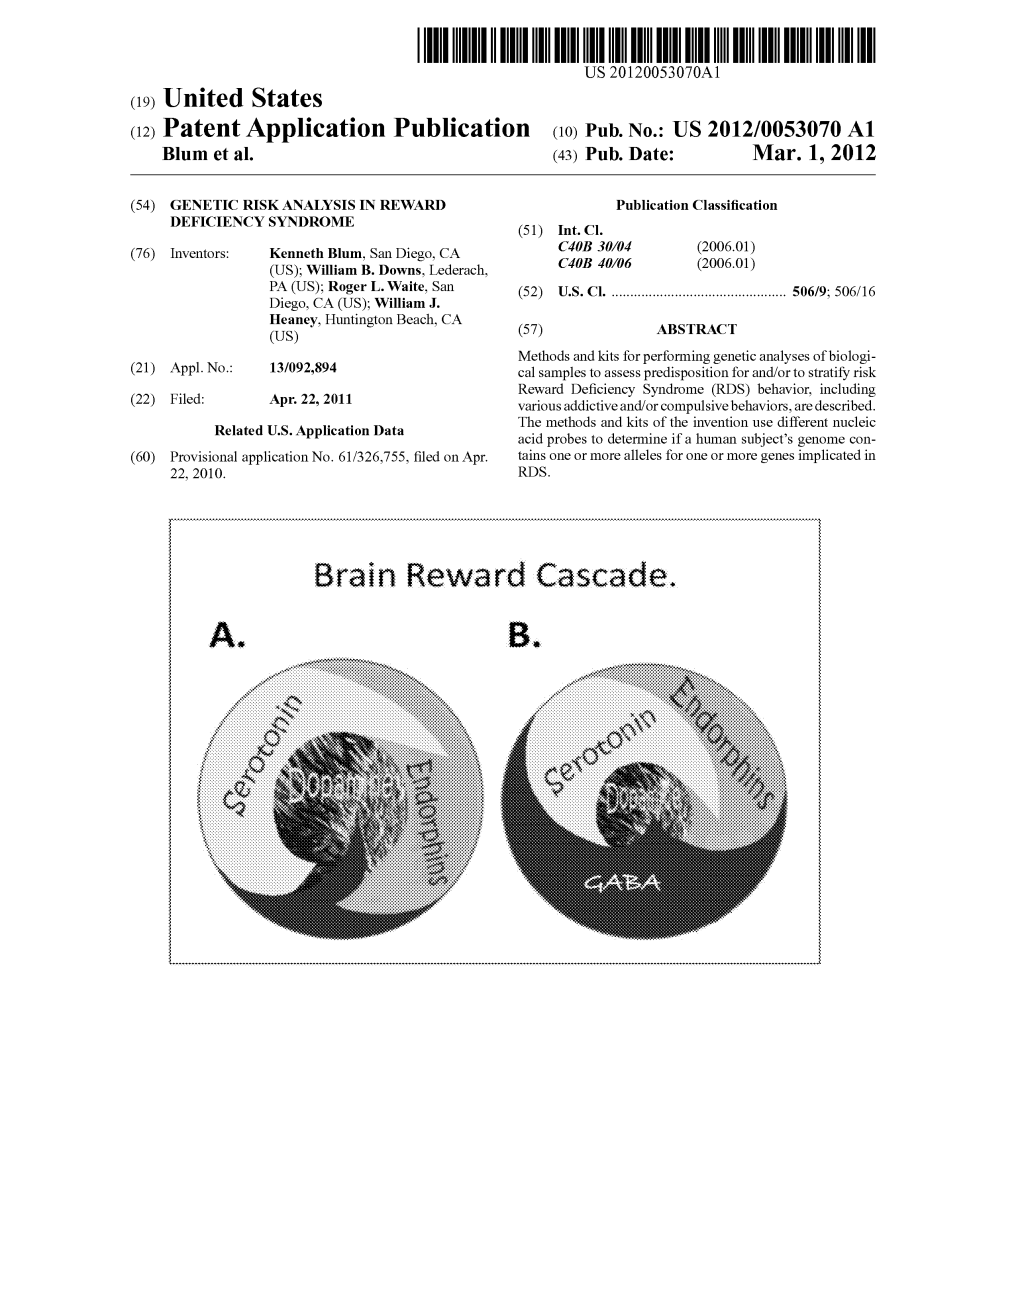 (12) Patent Application Publication (10) Pub. No.: US 2012/0053070 A1 Blum Et Al